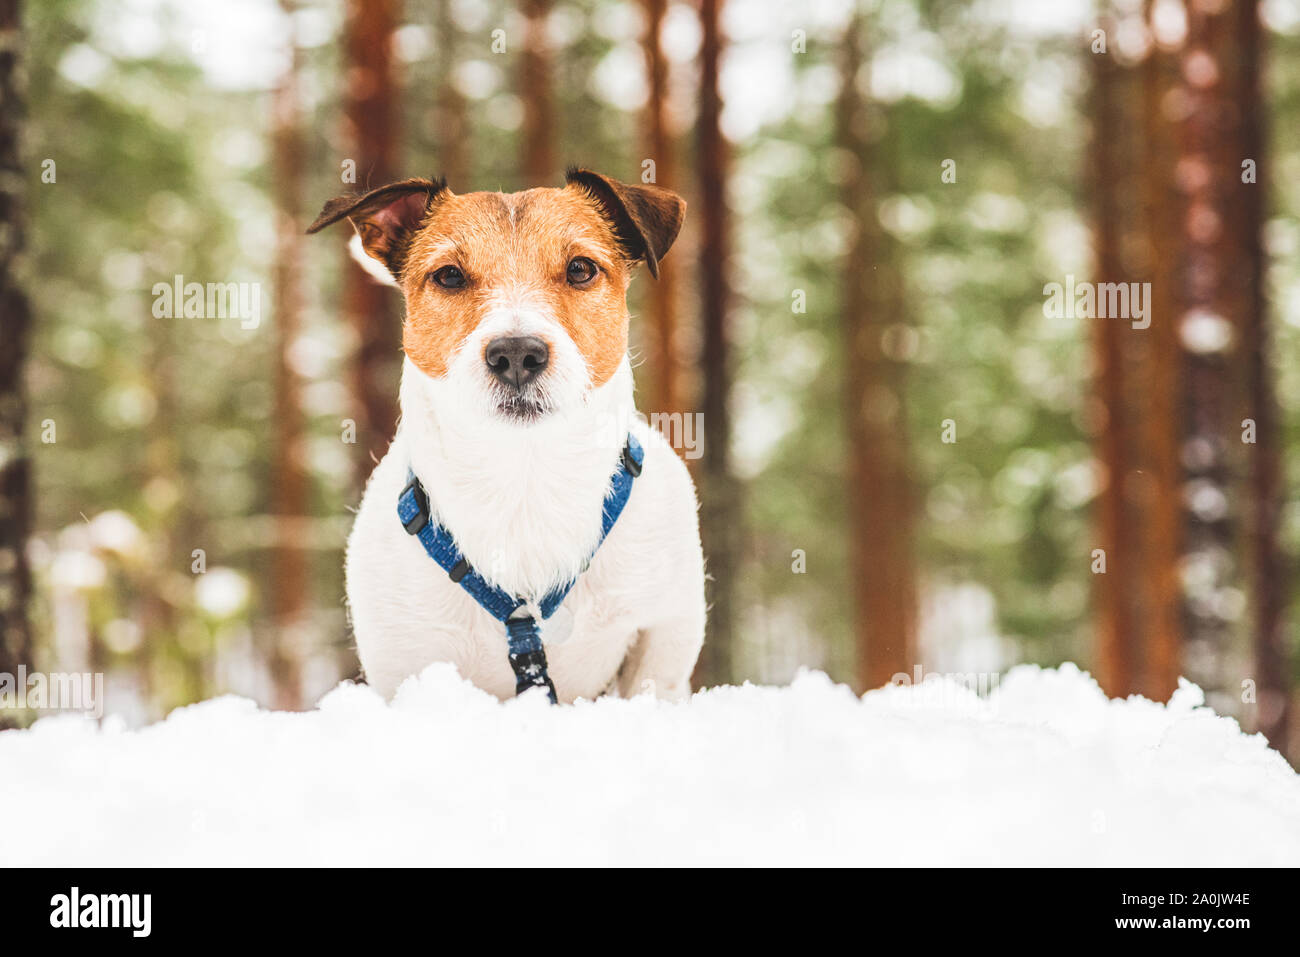 Portrait de chien dans la neige durant matin promenade en forêt Banque D'Images